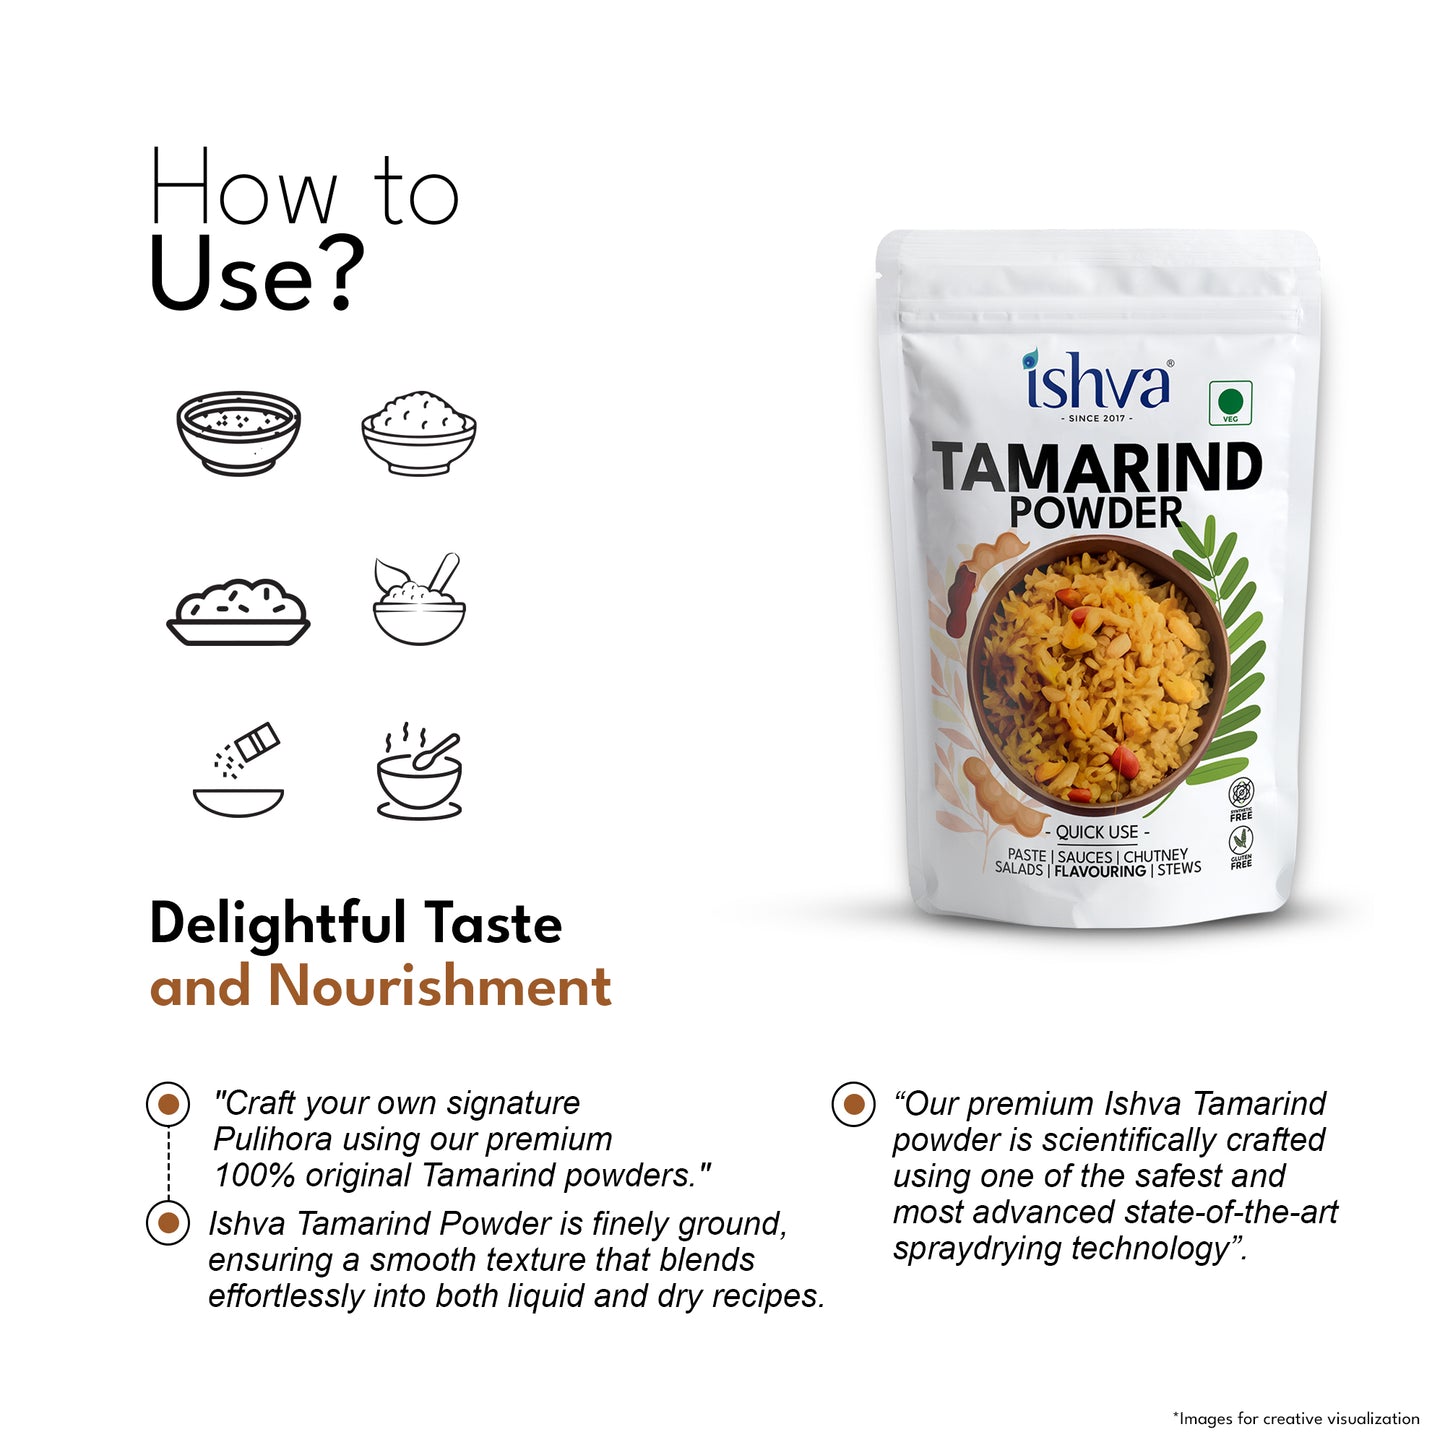 Ishva Tamarind Powder - Flavor for Pulihora